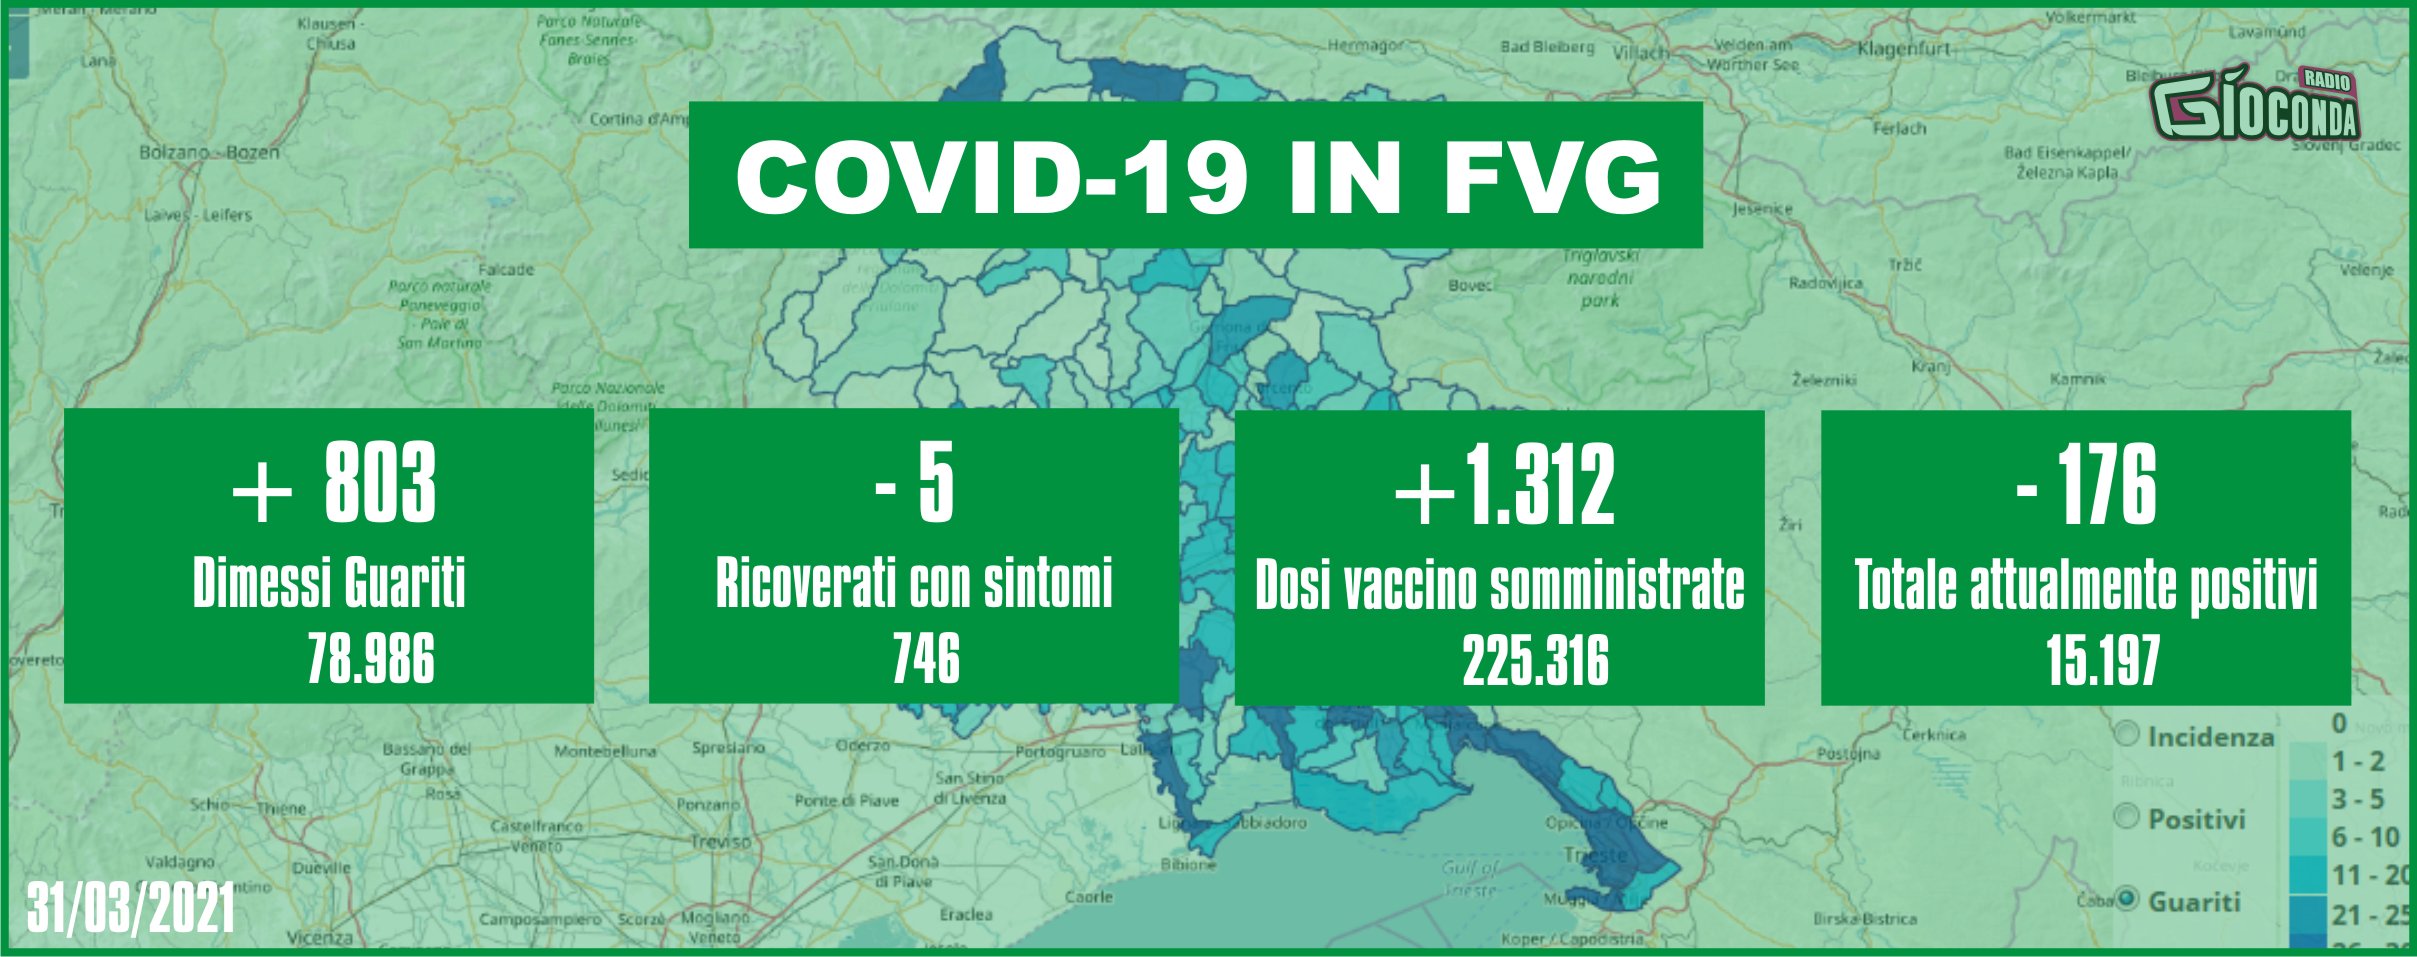 31 marzo 2021 - Aggiornamento casi Covid-19 Dati aggregati quotidiani FRIULI VENEZIA GIULIA